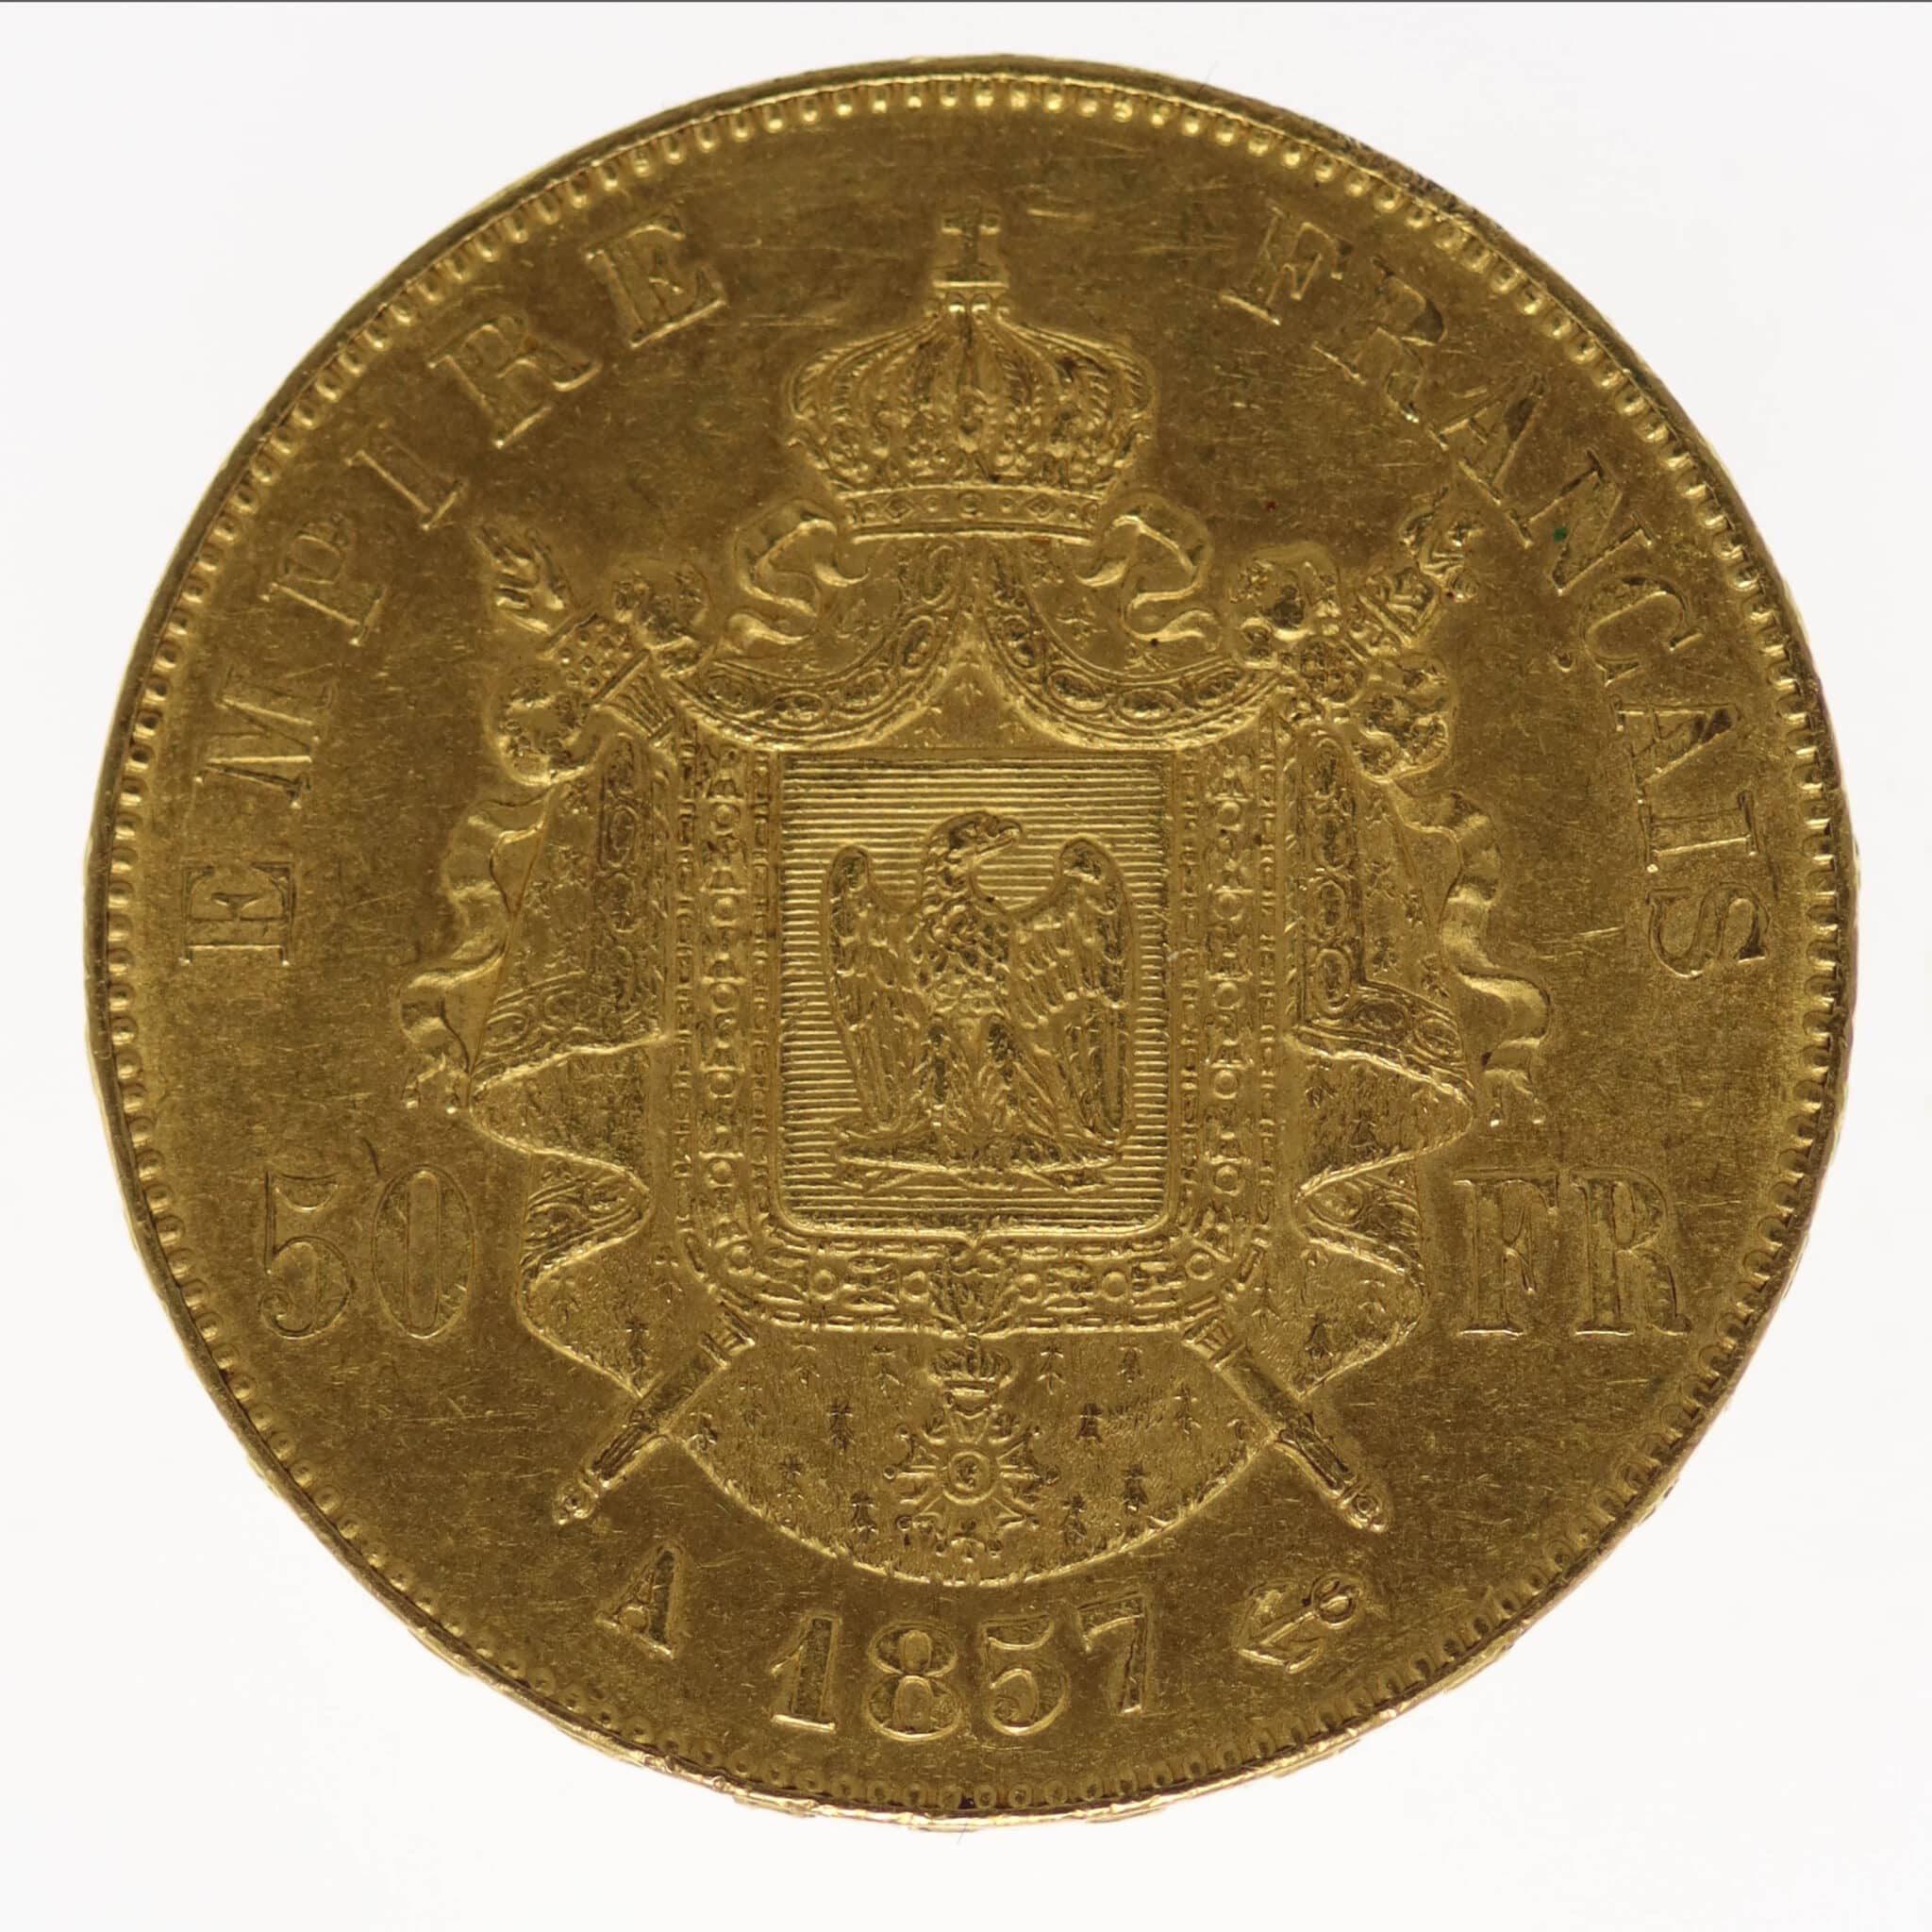 frankreich - Frankreich Napoleon III. 50 Francs 1857 A